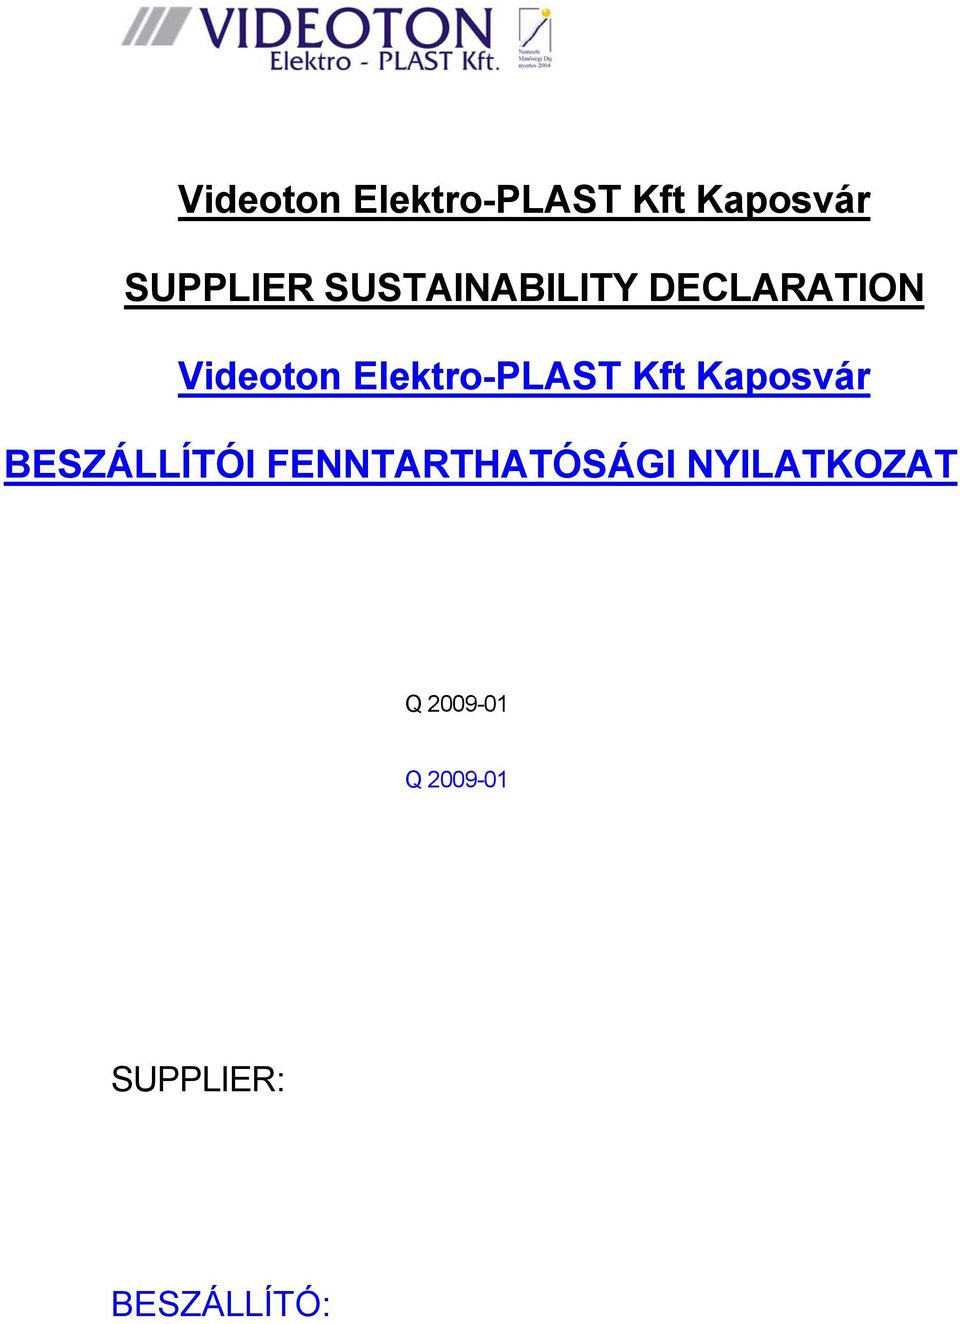 Videoton Elektro-PLAST Kft Kaposvár SUPPLIER SUSTAINABILITY DECLARATION.  Videoton Elektro-PLAST Kft Kaposvár BESZÁLLÍTÓI FENNTARTHATÓSÁGI  NYILATKOZAT - PDF Free Download